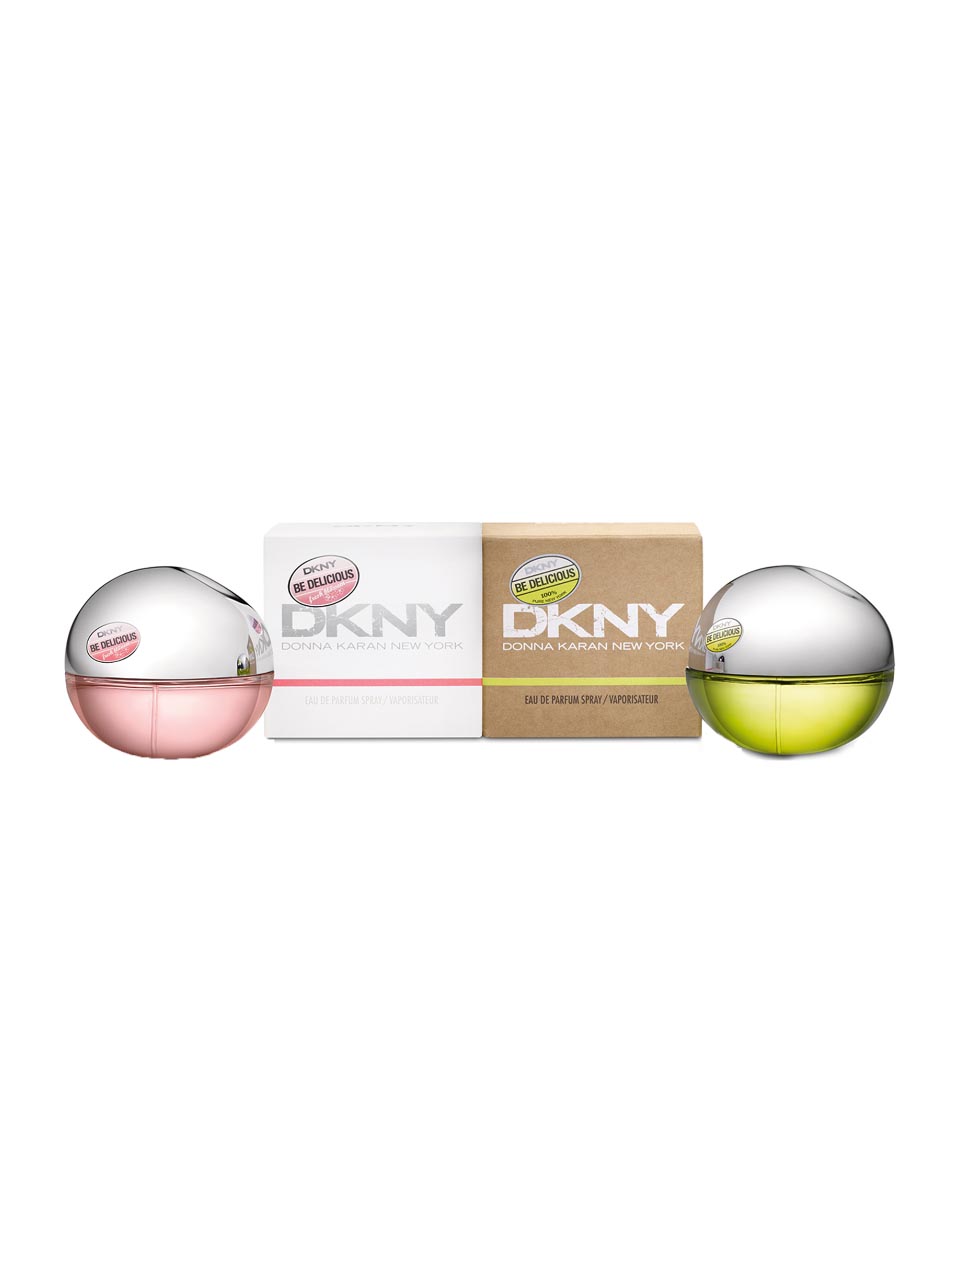 DKNY Fresh Blossom Duo Set null - onesize - 1